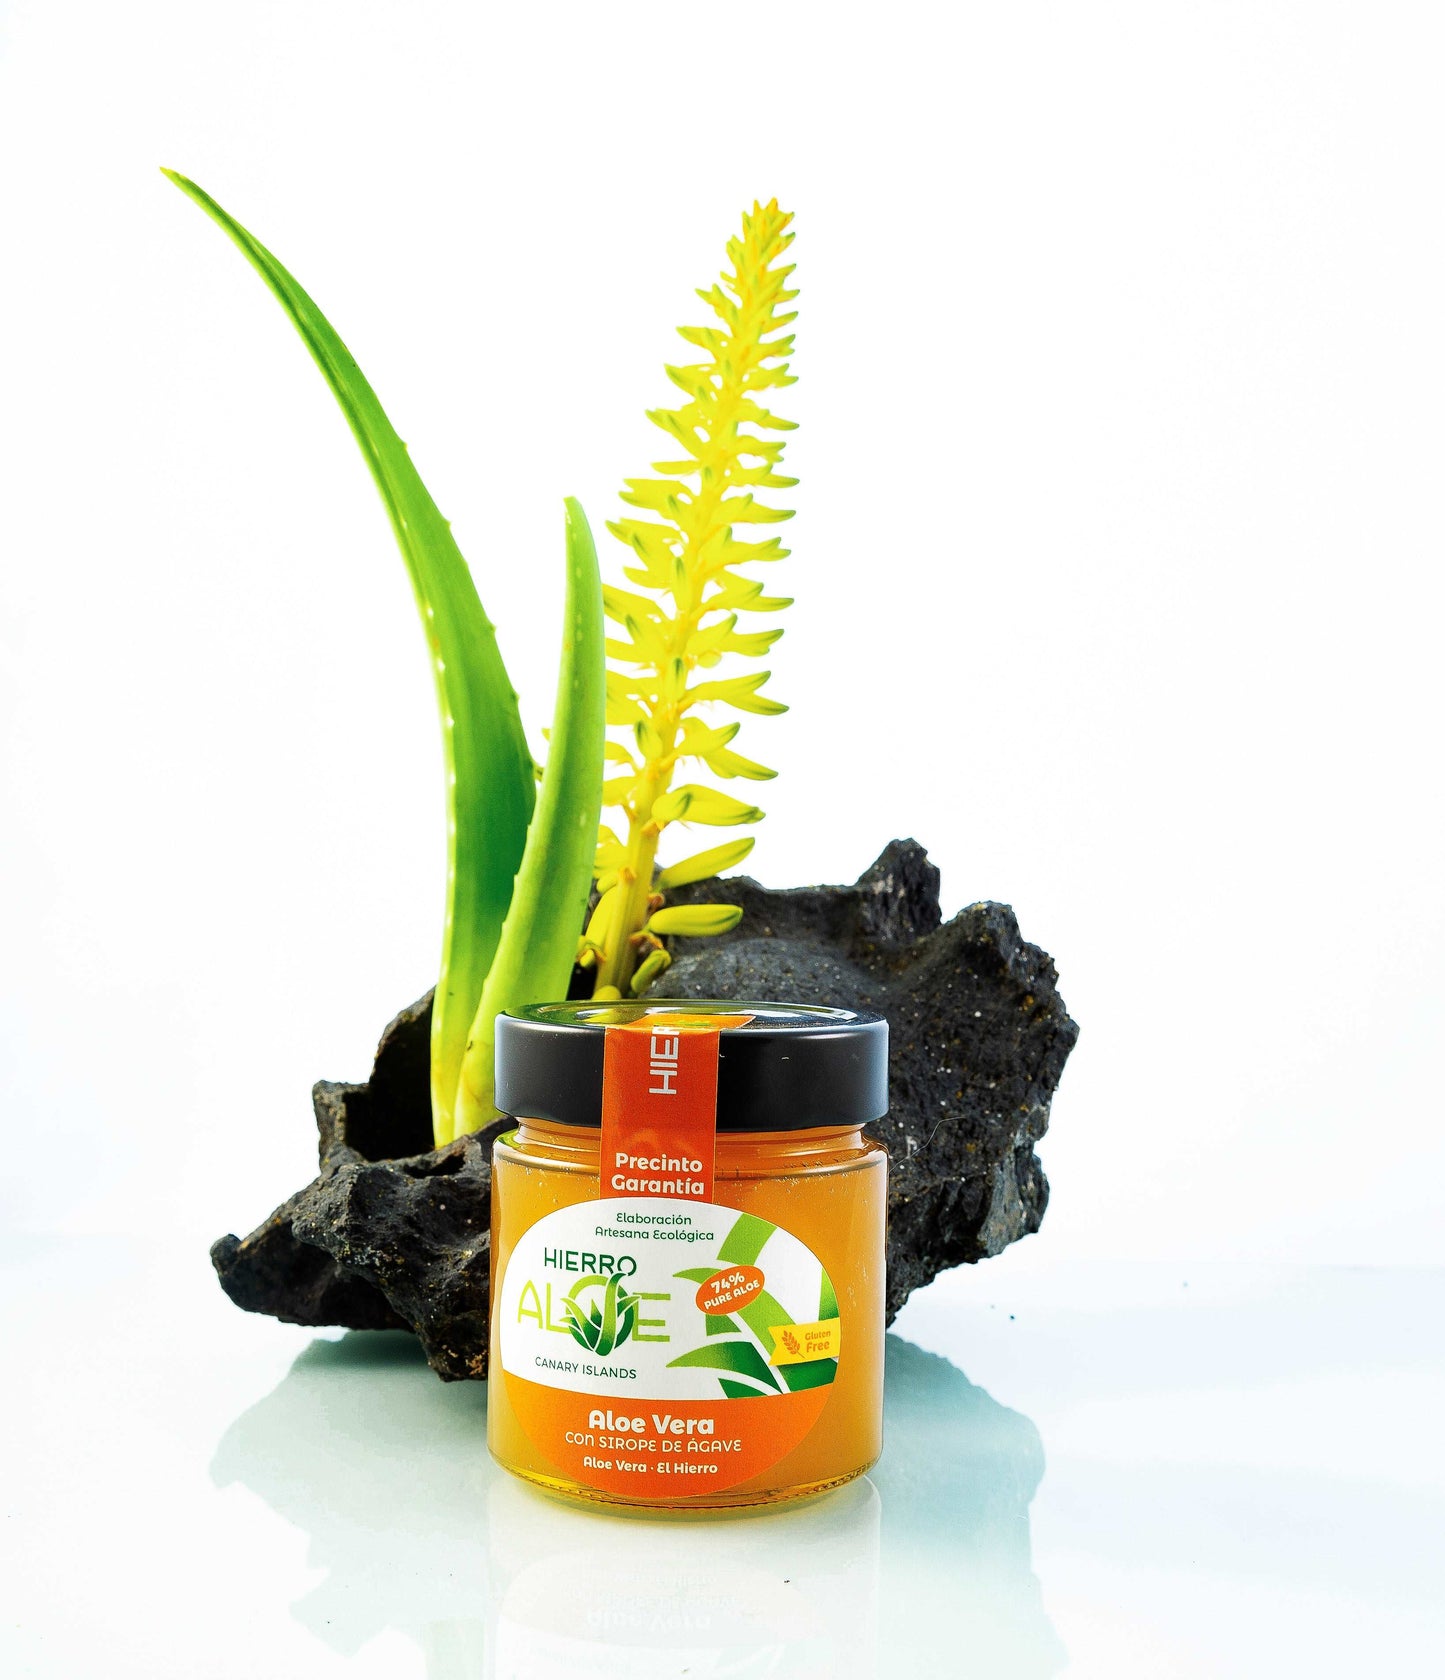 Confettura di Aloe vera e cactus - Hierro Aloe - I migliori prodotti Made in Italy da Fiera di Monza Shop - Solo 11.40€! Acquista subito su Fiera di Monza Shop!